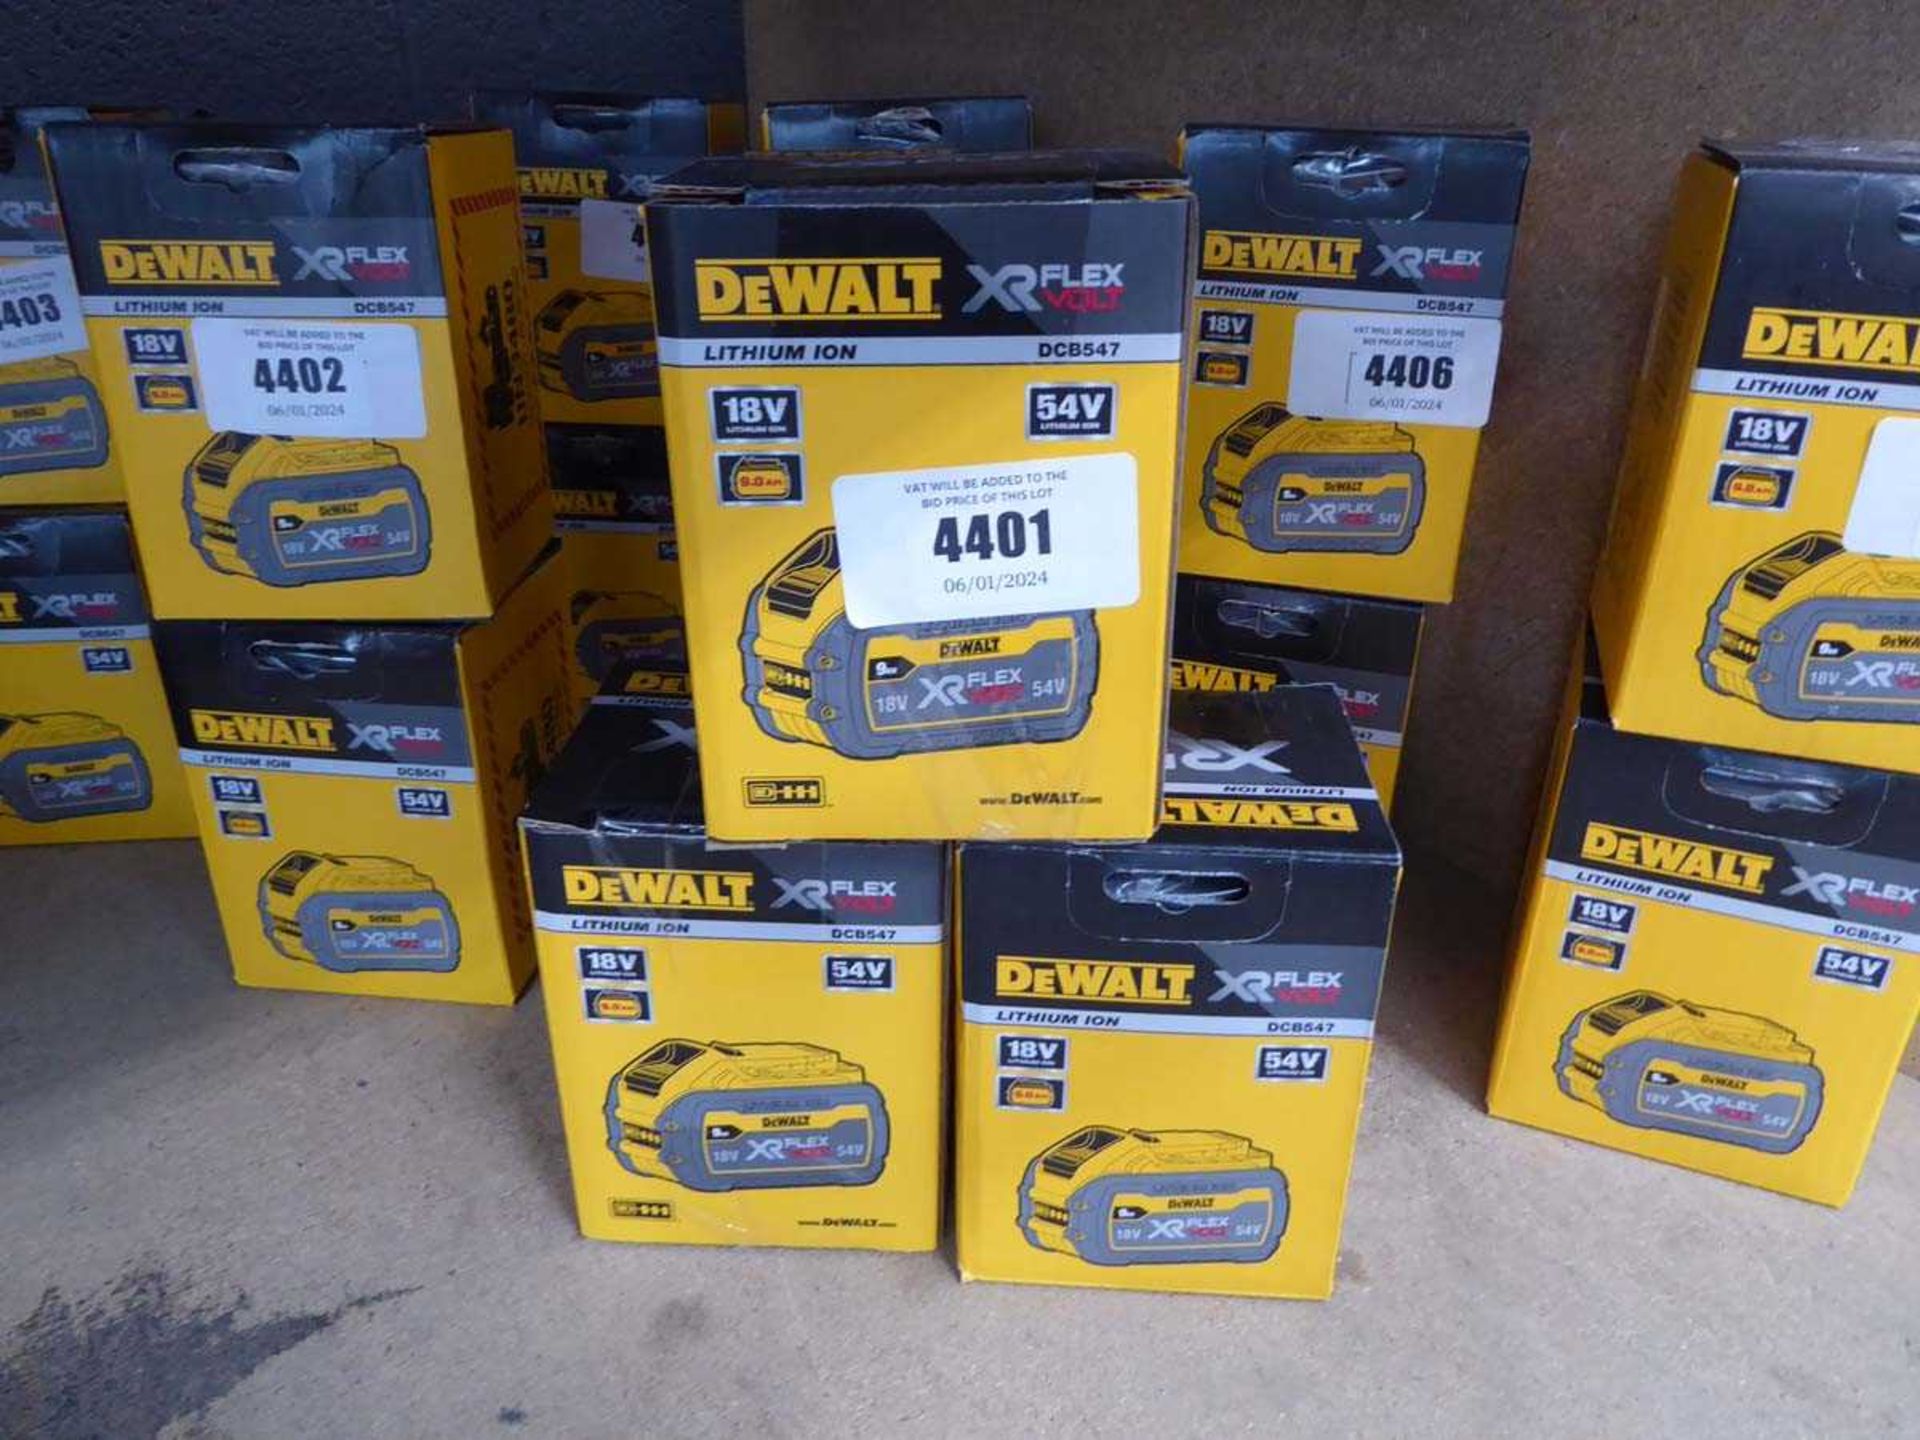 +VAT 3 Dewalt XR Flex 18V batteries